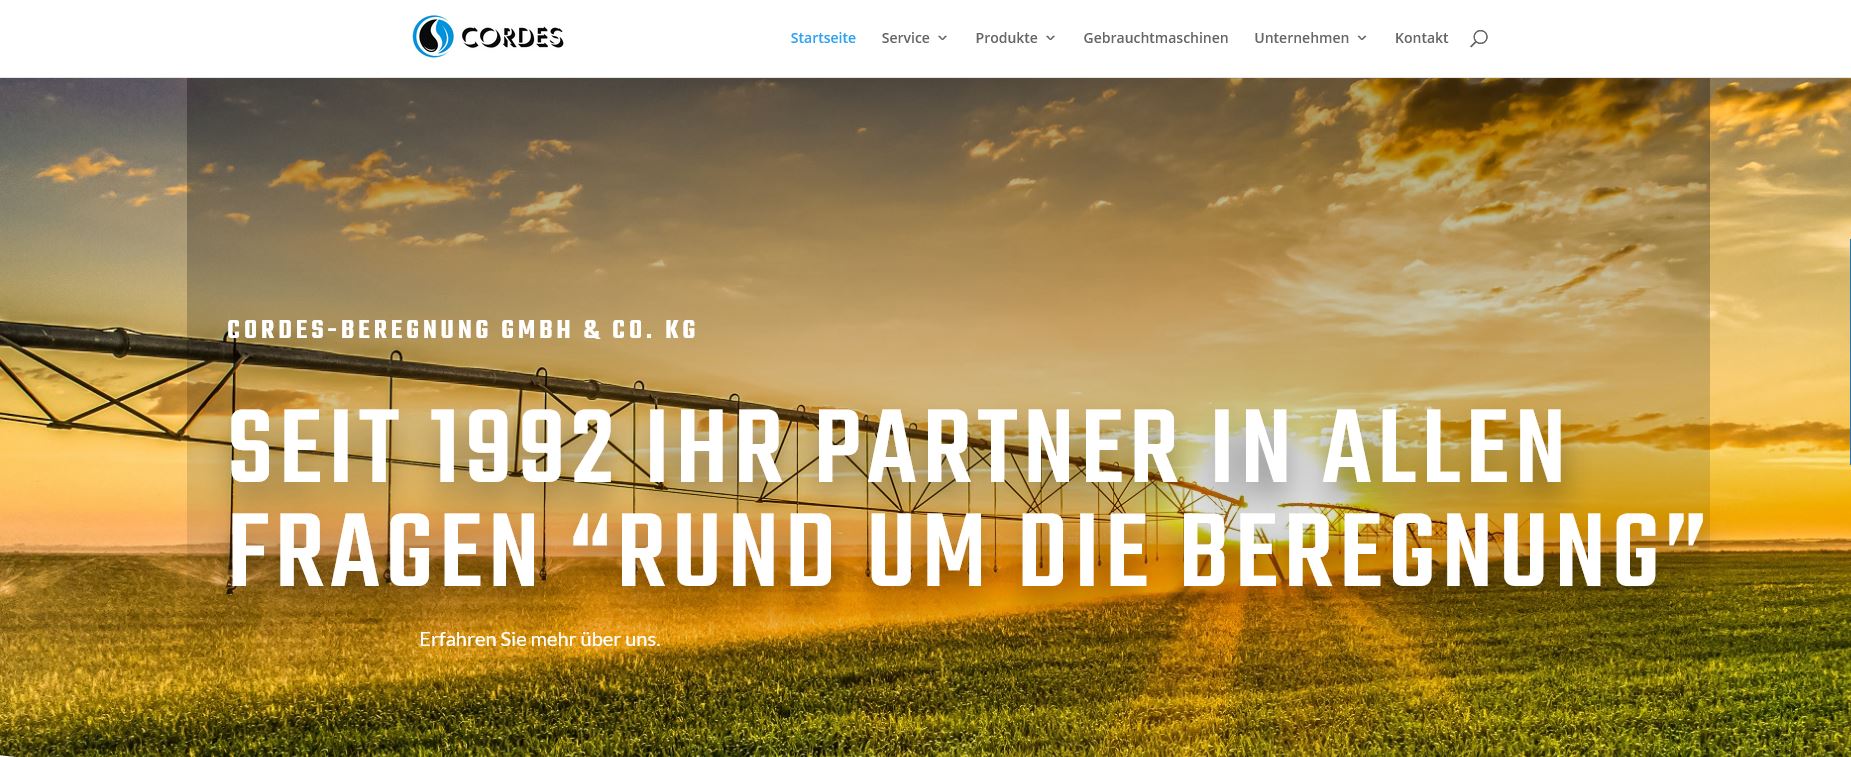 Banner der Startseite der Cordes-Beregnung GmbH & Co. KG Homepage